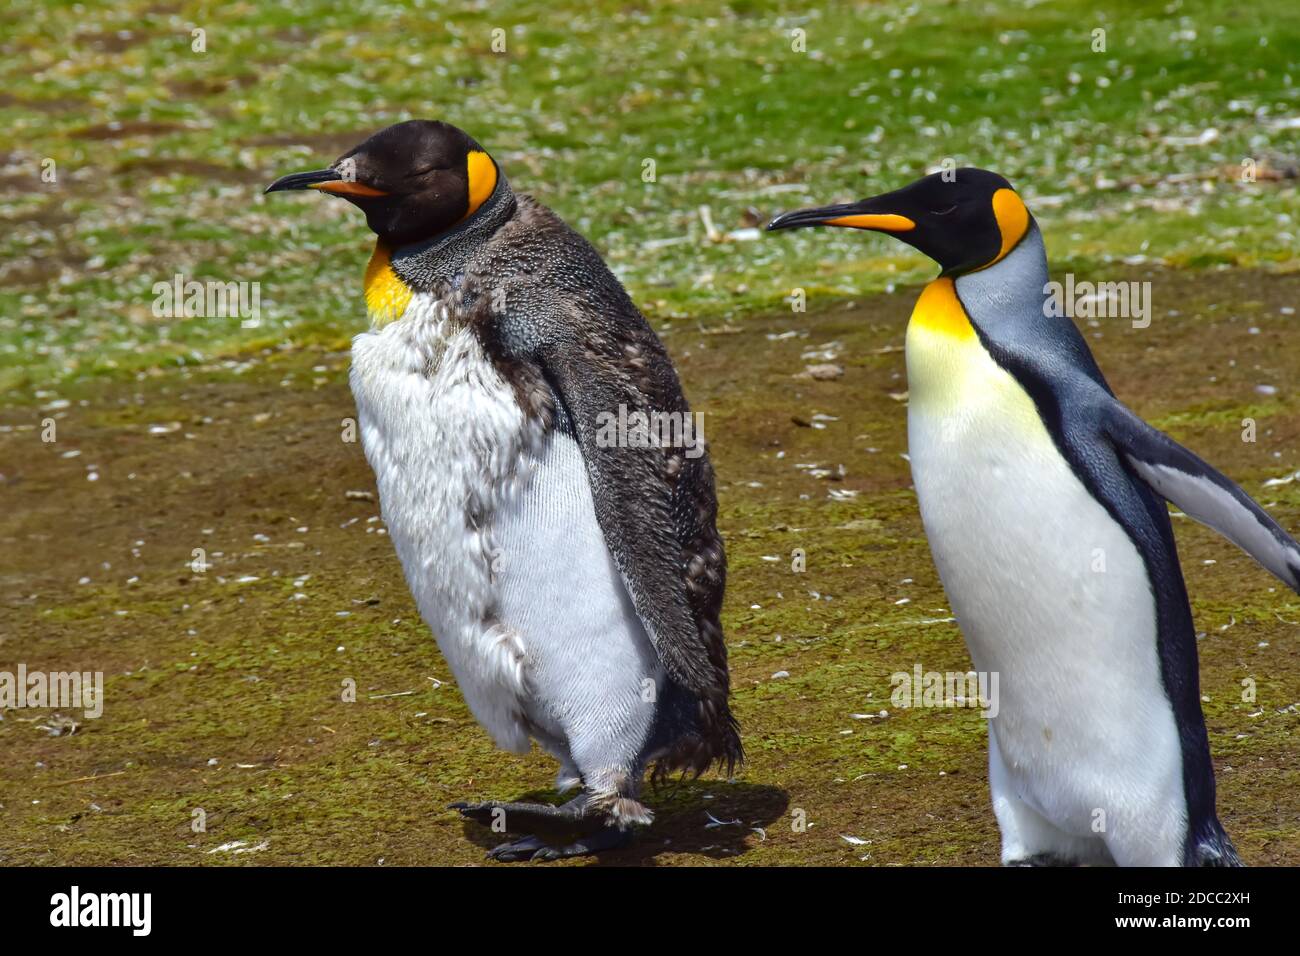 Dos pingüinos de rey─un menor y un adulto─para un paseo en Volunteer Point, Islas Malvinas. Foto de stock